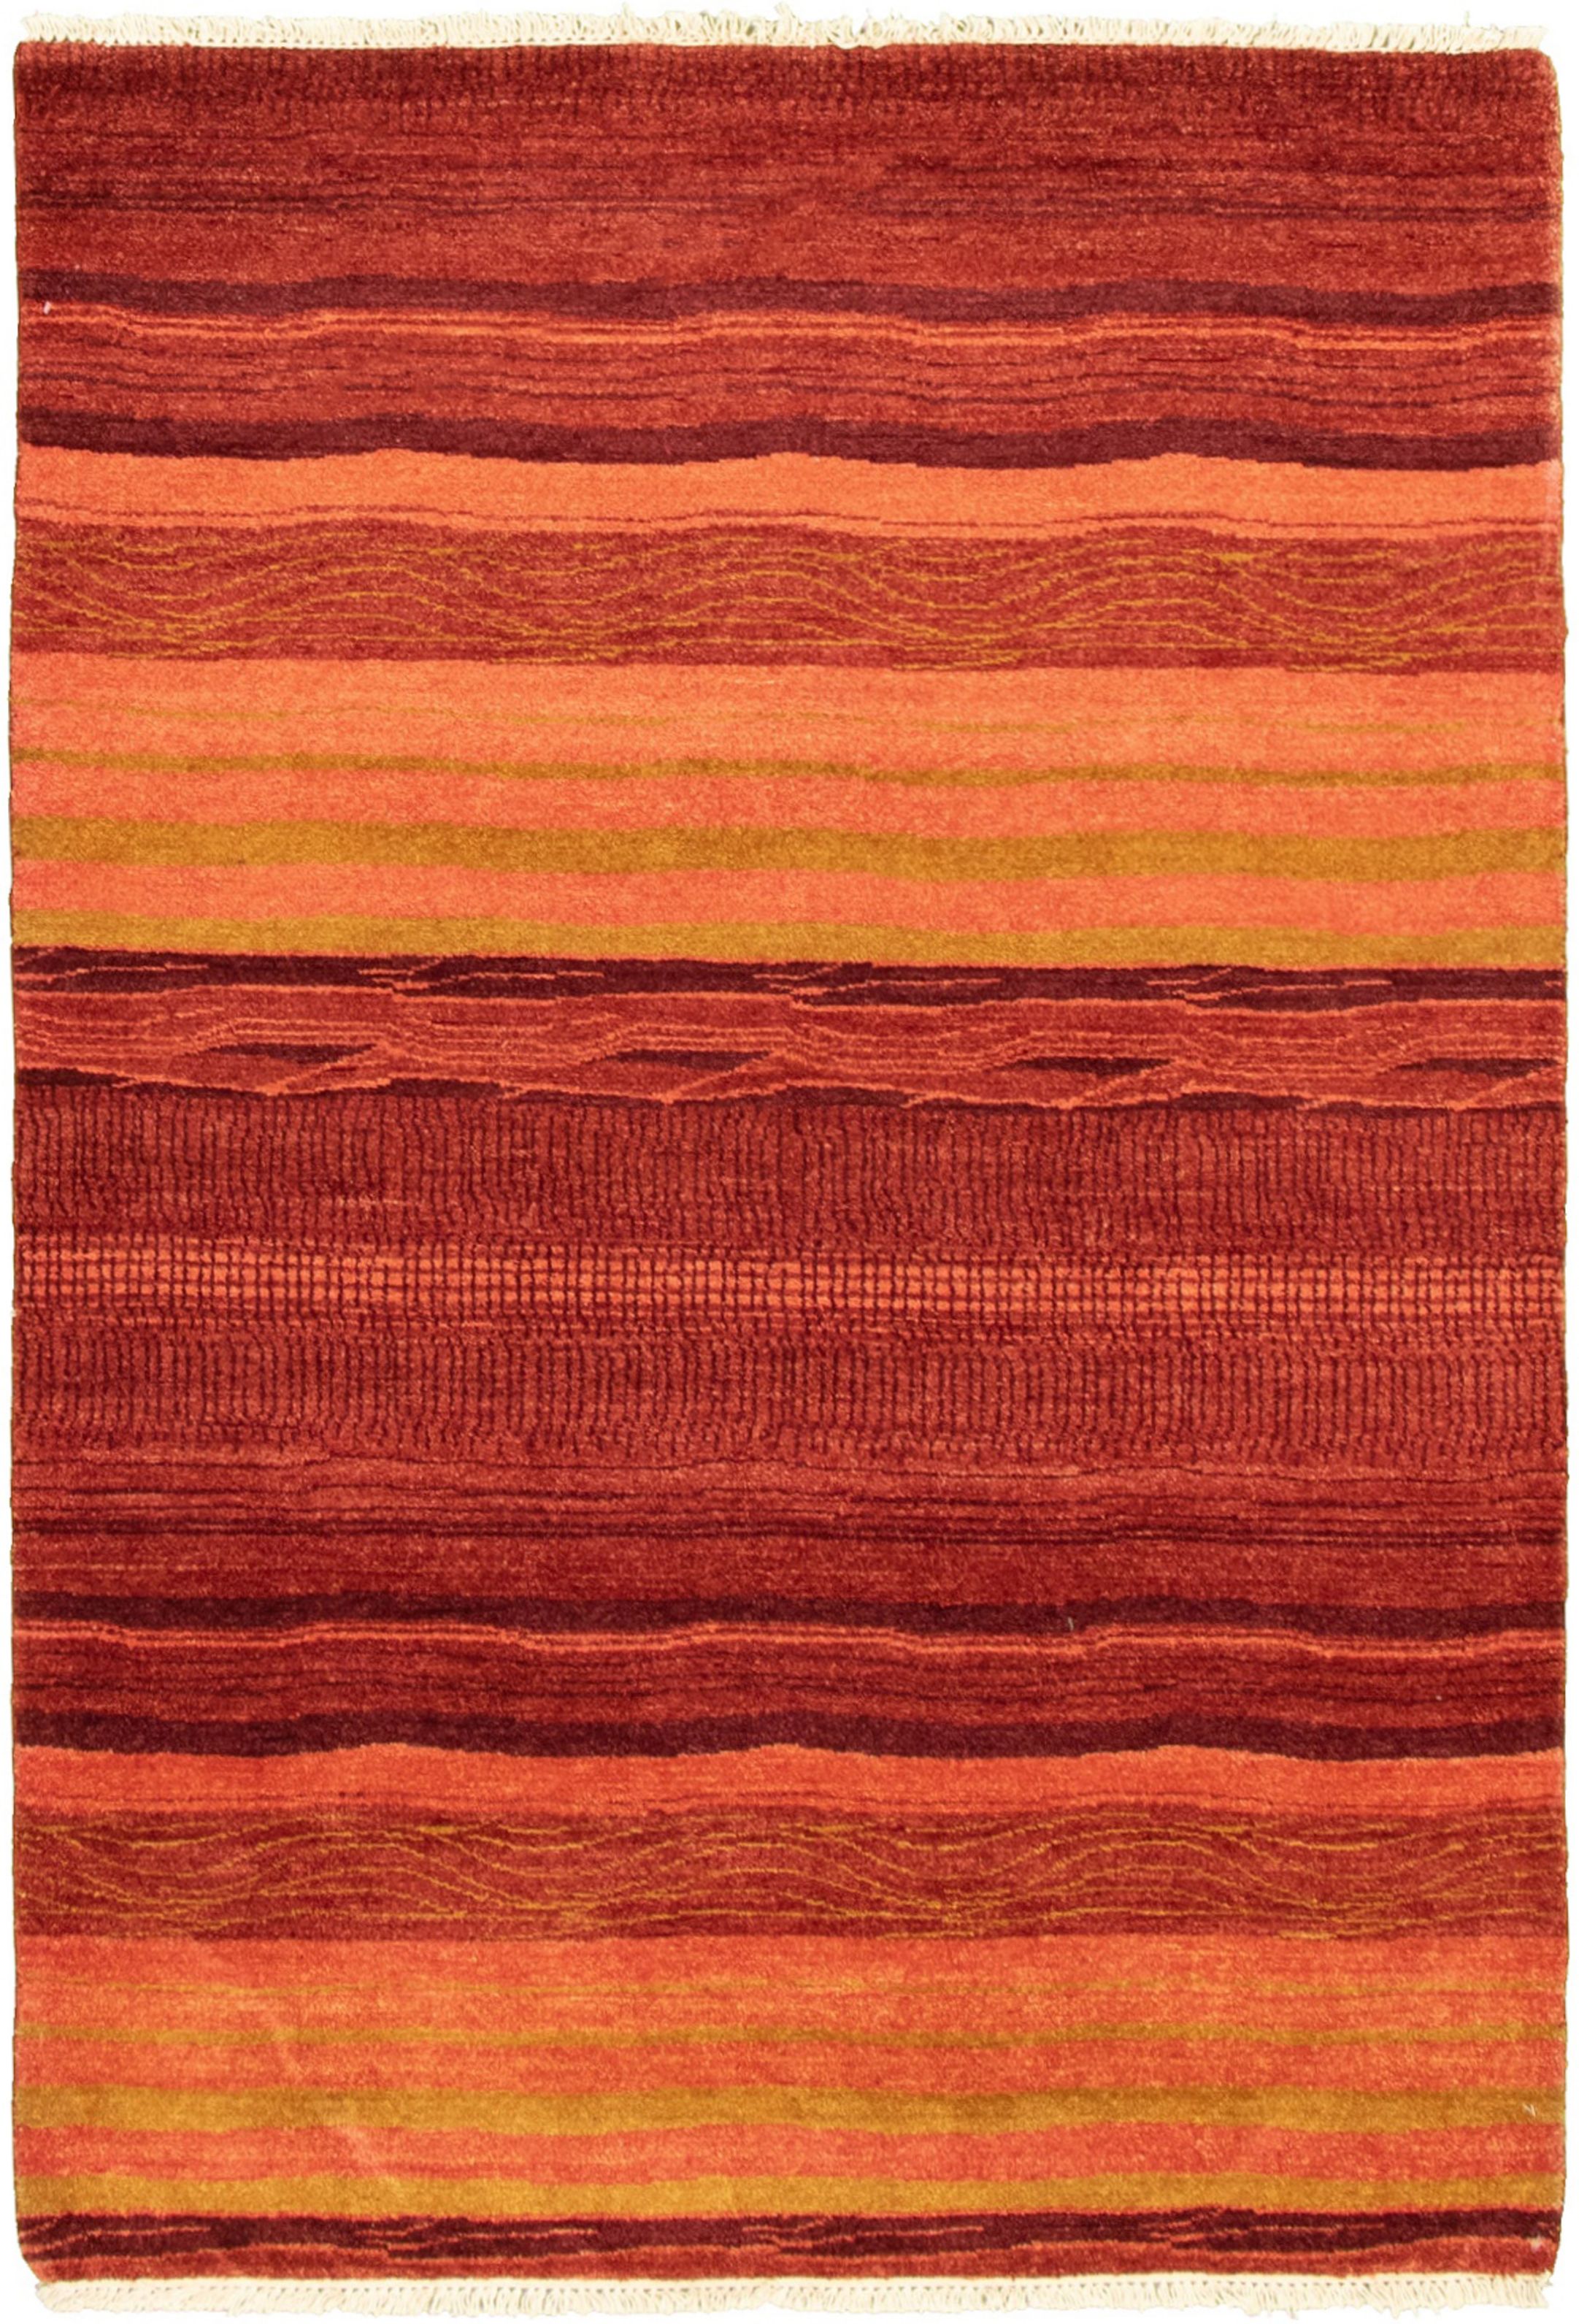 Hand-knotted Peshawar Ziegler Dark Copper Wool Rug 4'3" x 6'1" Size: 4'3" x 6'1"  